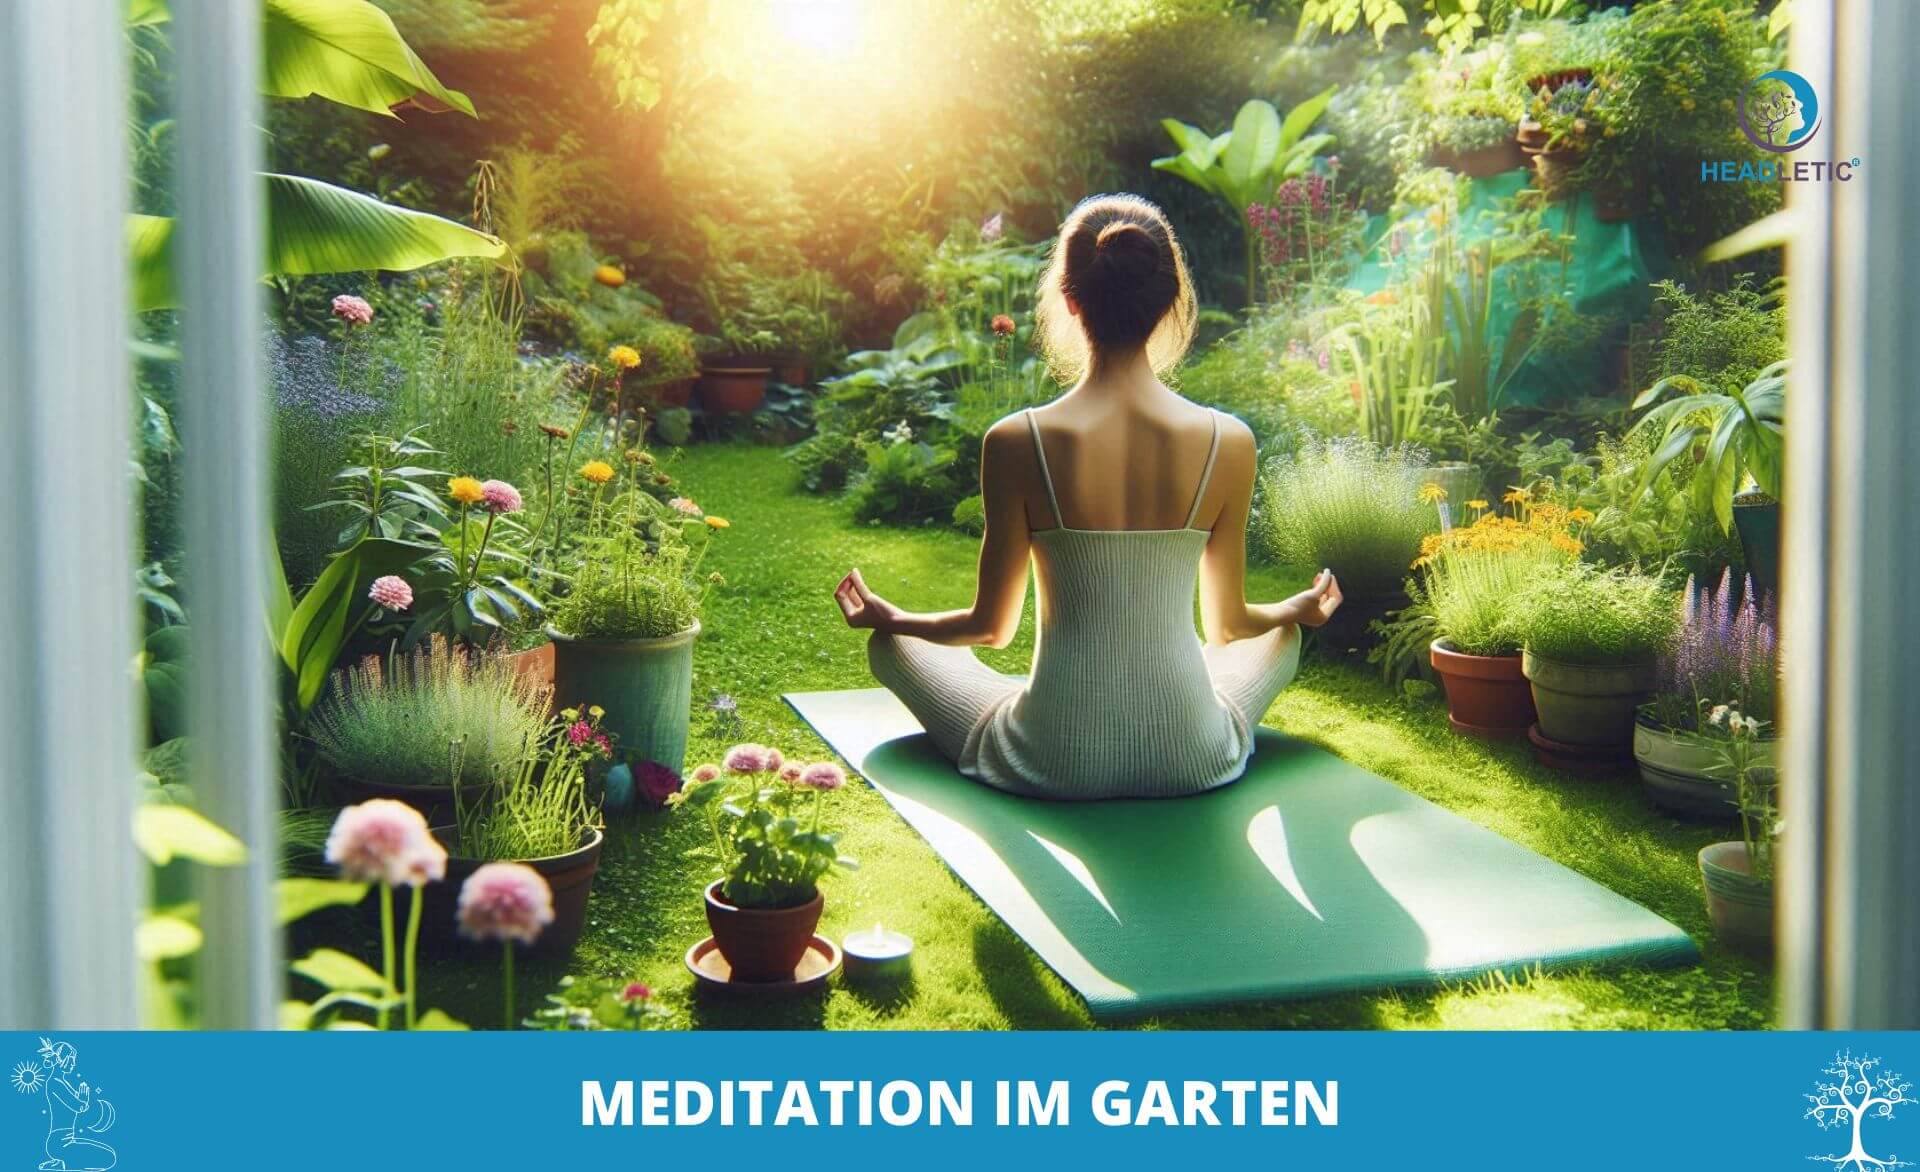 Eine Frau sitzt im Schneidersitz auf einer Yogamatte in einem üppigen Garten und meditiert. Verschiedene Topfpflanzen und Blumen umgeben sie, im Hintergrund scheint hell die Sonne. Der Text lautet „Meditation im Garten“.